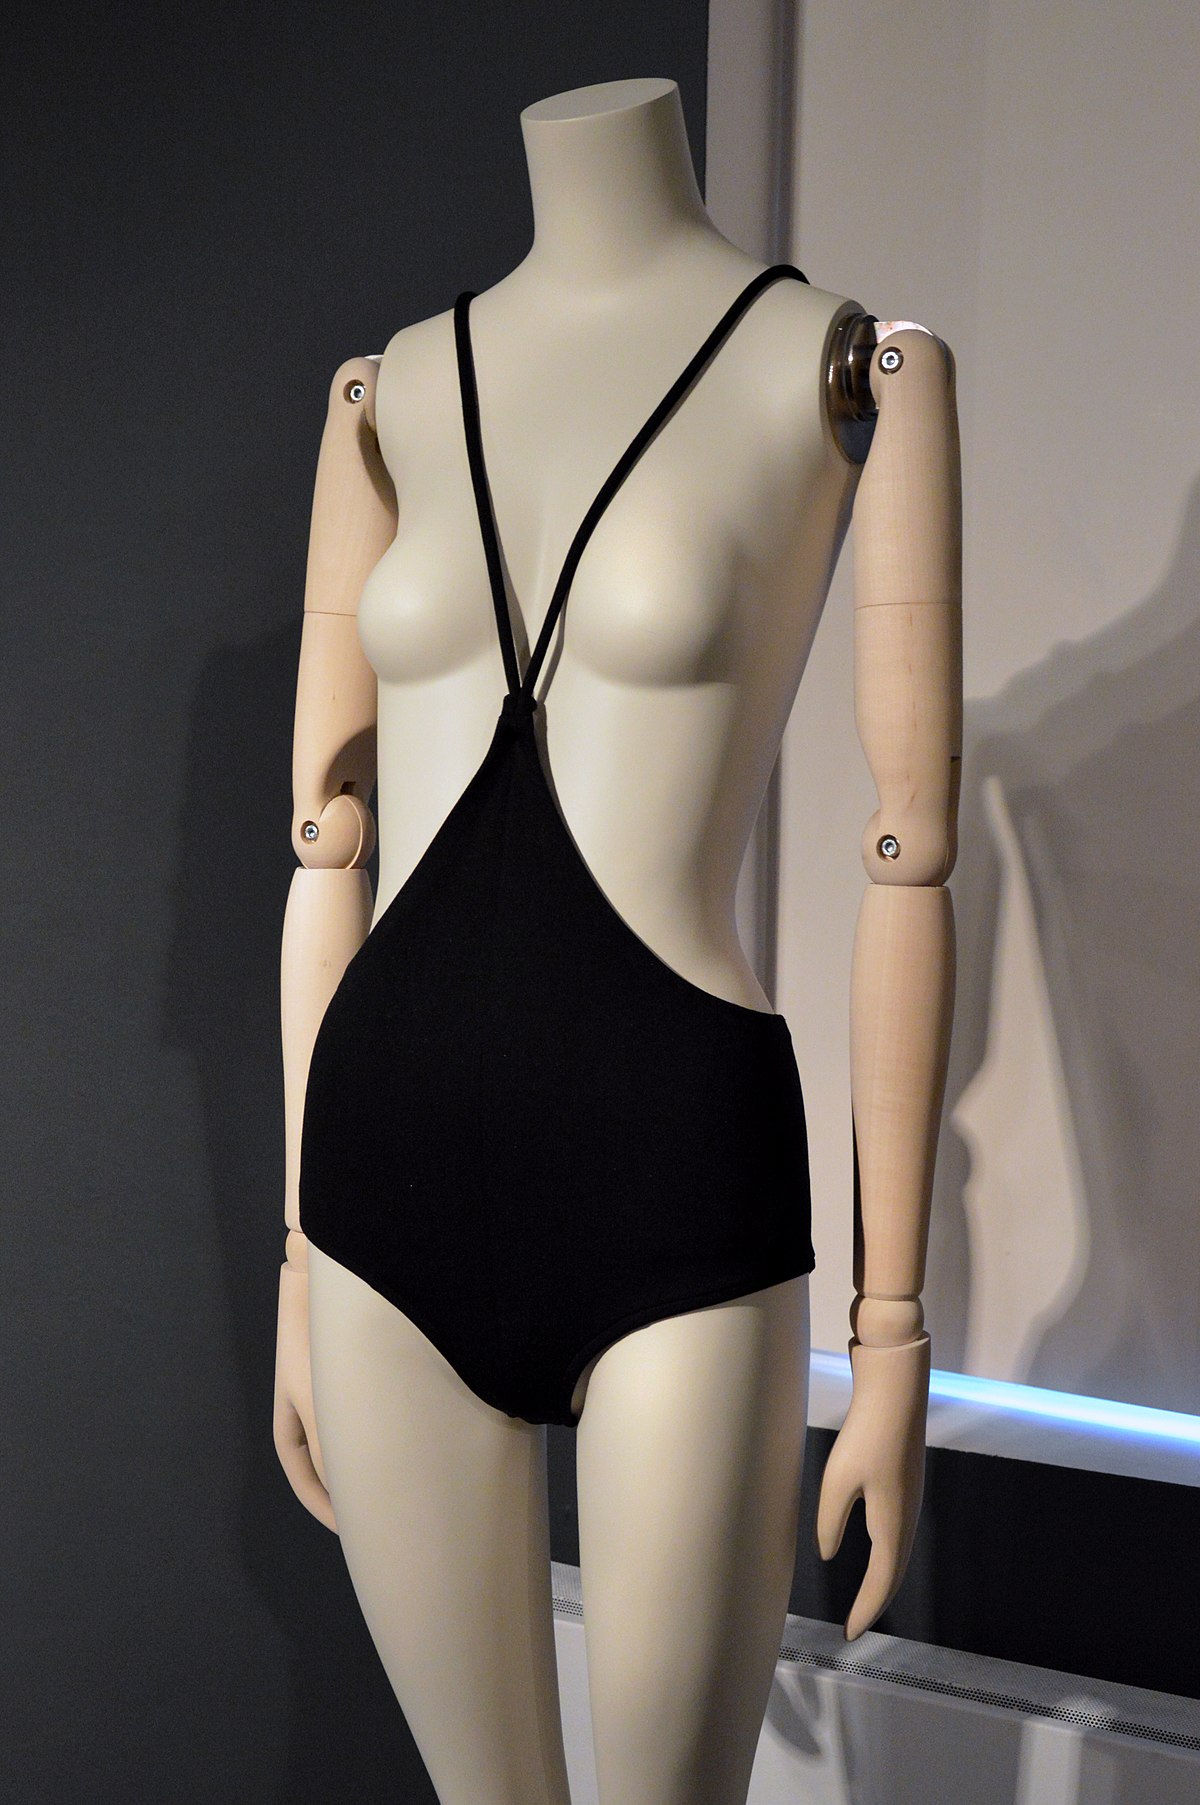 Monokini được sáng tạo bởi Rudi Gernreich vào năm 1964, chỉ gồm một chiếc quần ngắn, bó sát phía dưới và hai dây mảnh, là bộ áo tắm ngực trần đầu tiên của phụ nữ. Nó là một chiếc quần được giữ chặt bằng dây mảnh thắt sau gáy.